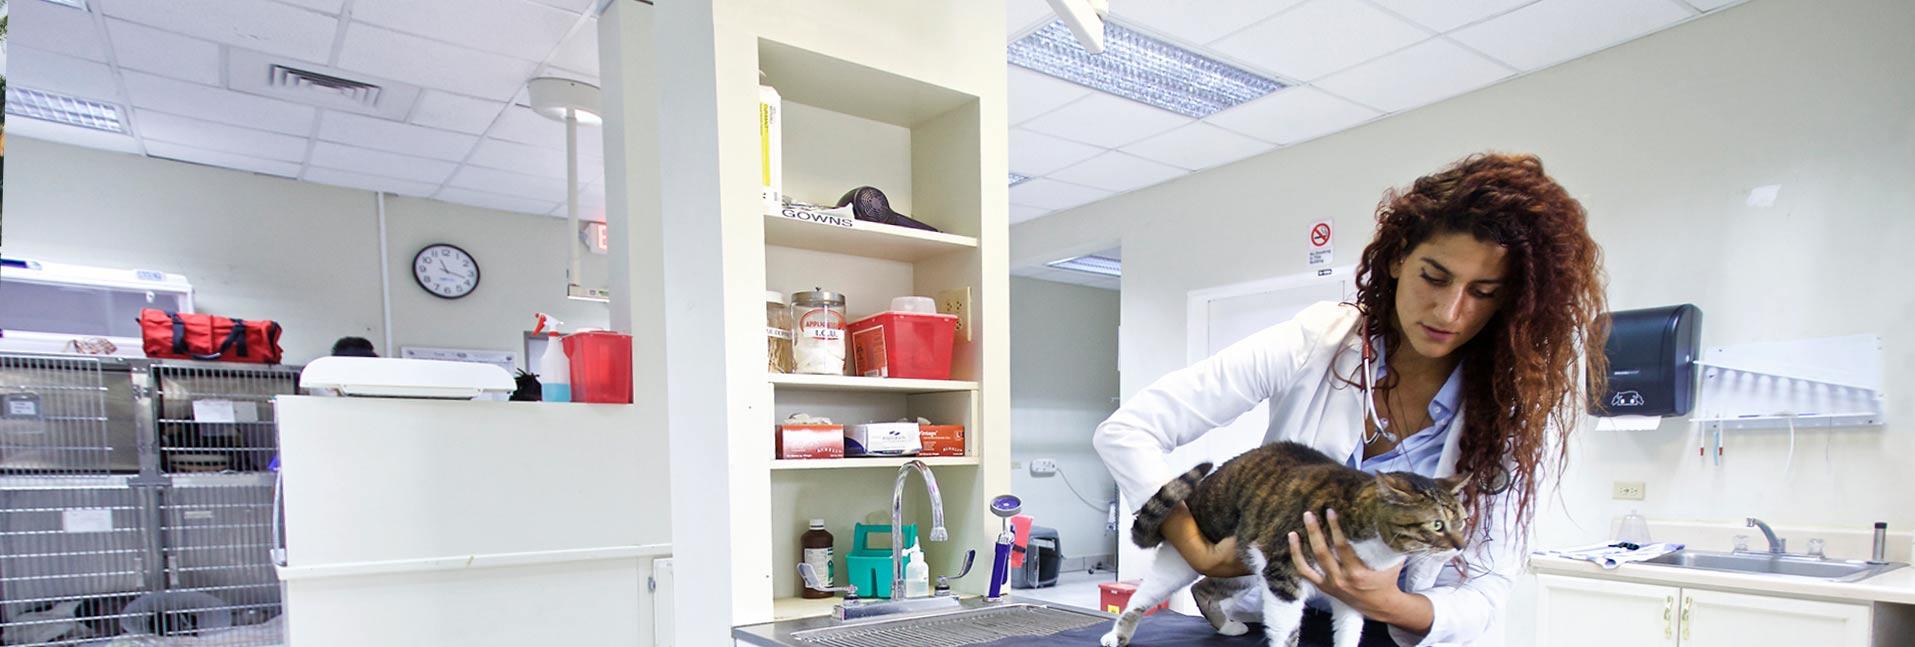 Veterinarian examining cat on medical table